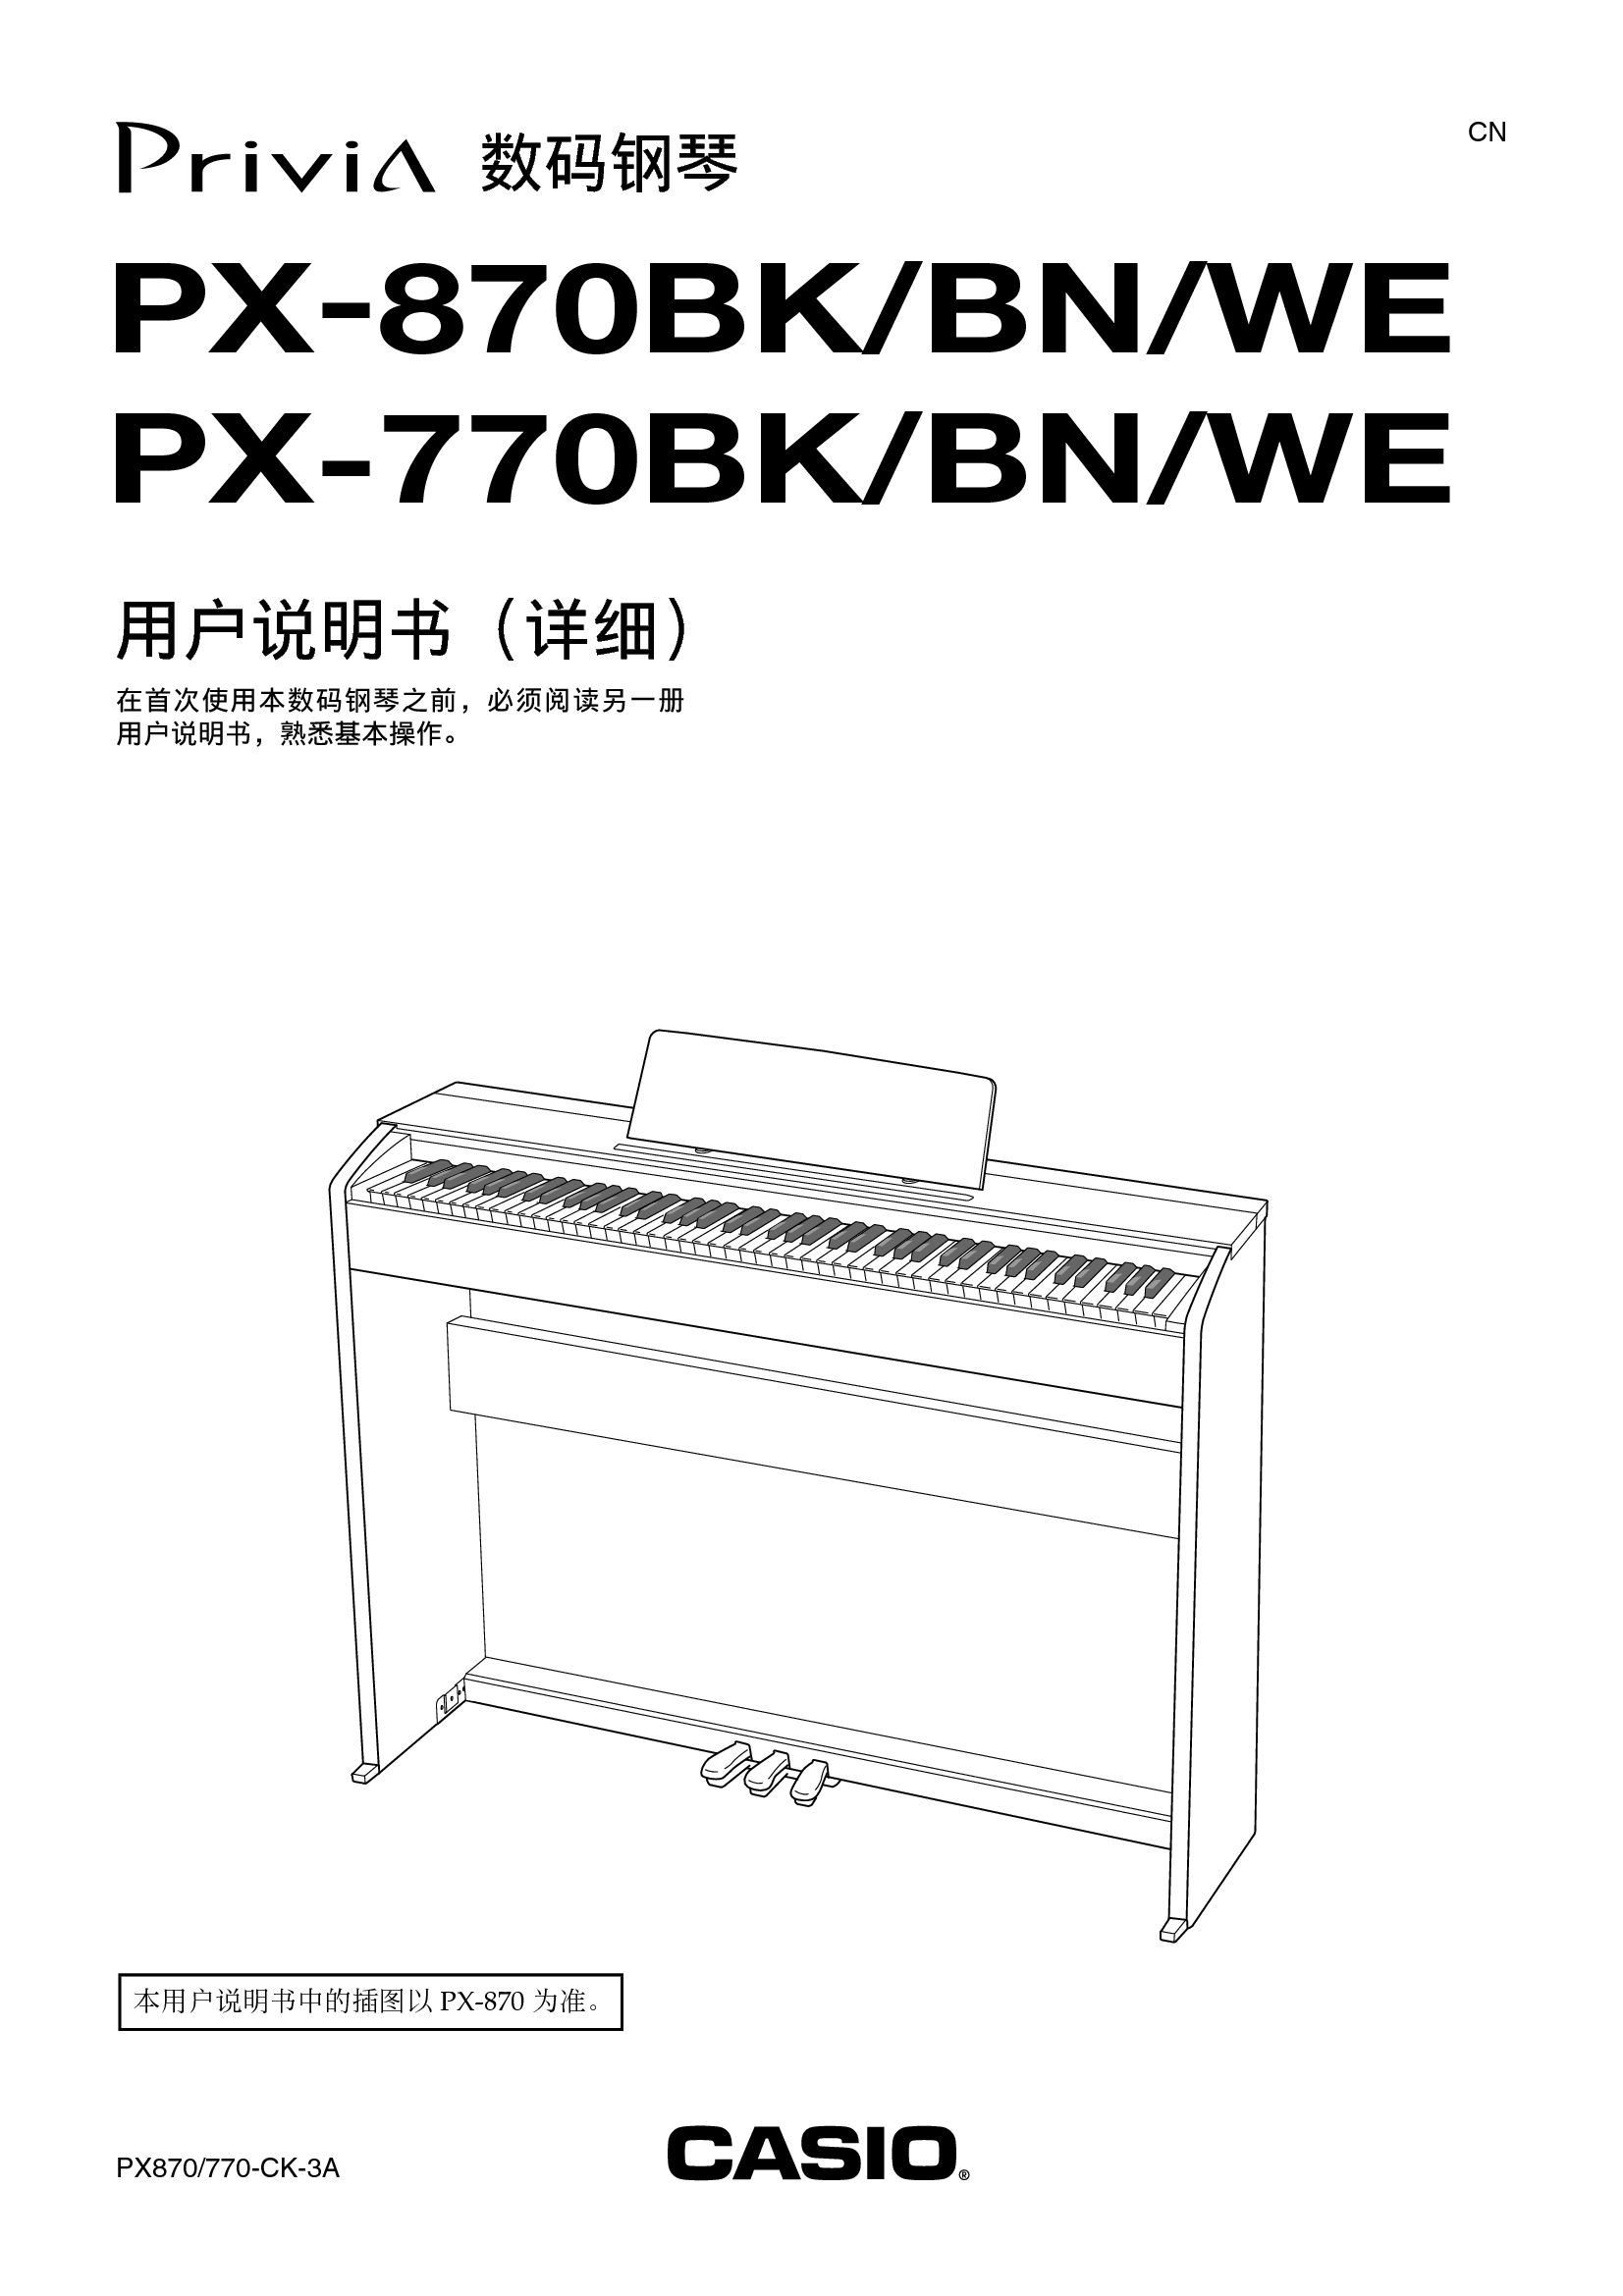 卡西欧 Casio PX-770BK, PX-870WE 使用说明书 封面